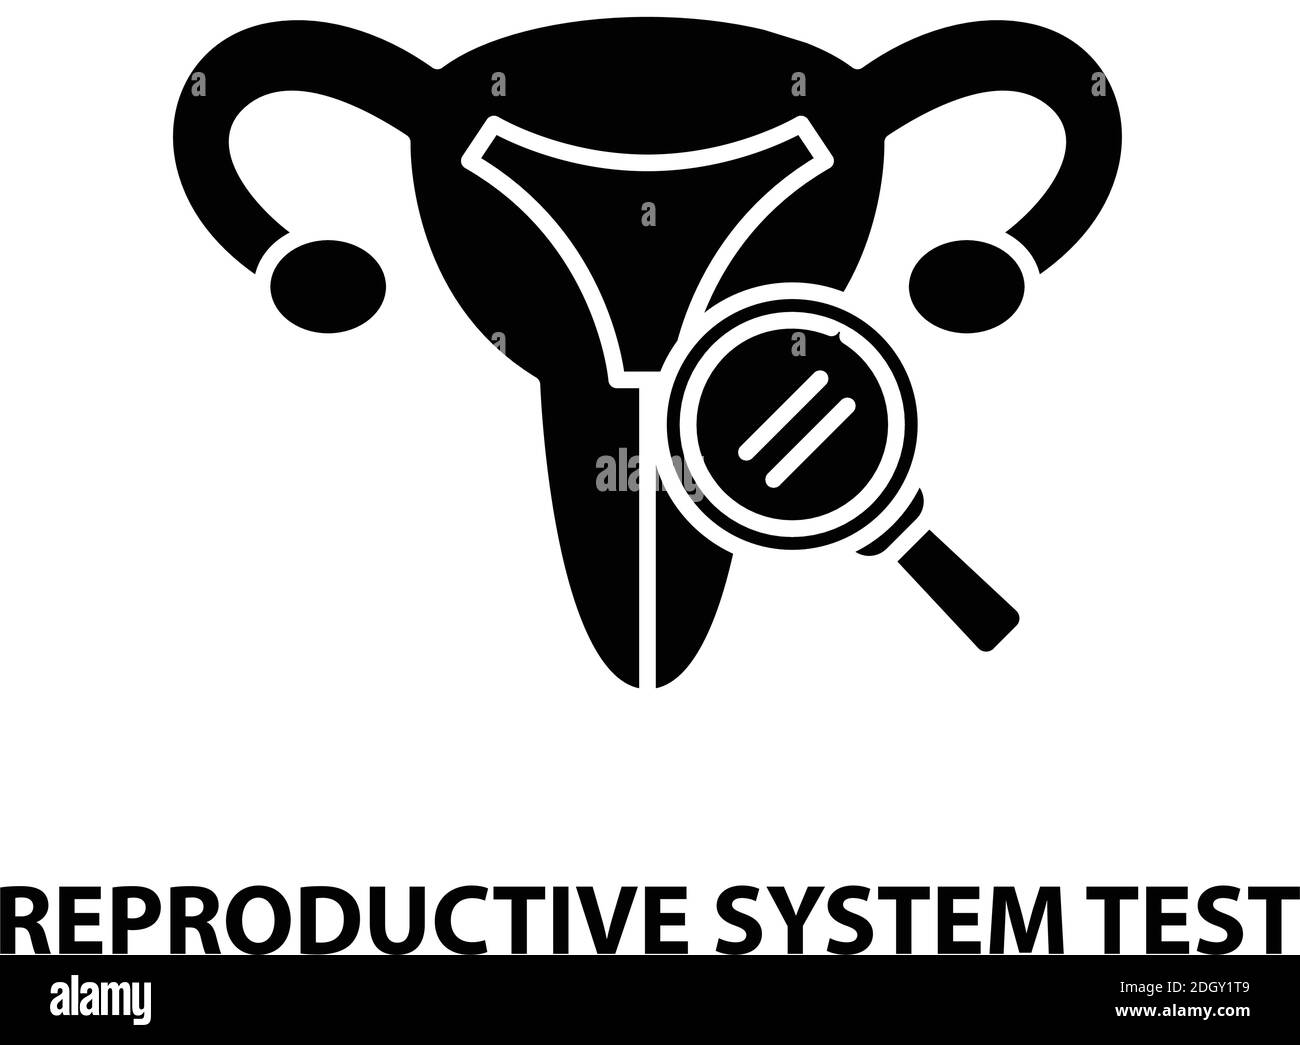 Testsymbol für reproduktive Systeme, schwarzes Vektorzeichen mit bearbeitbaren Konturen, Konzeptdarstellung Stock Vektor